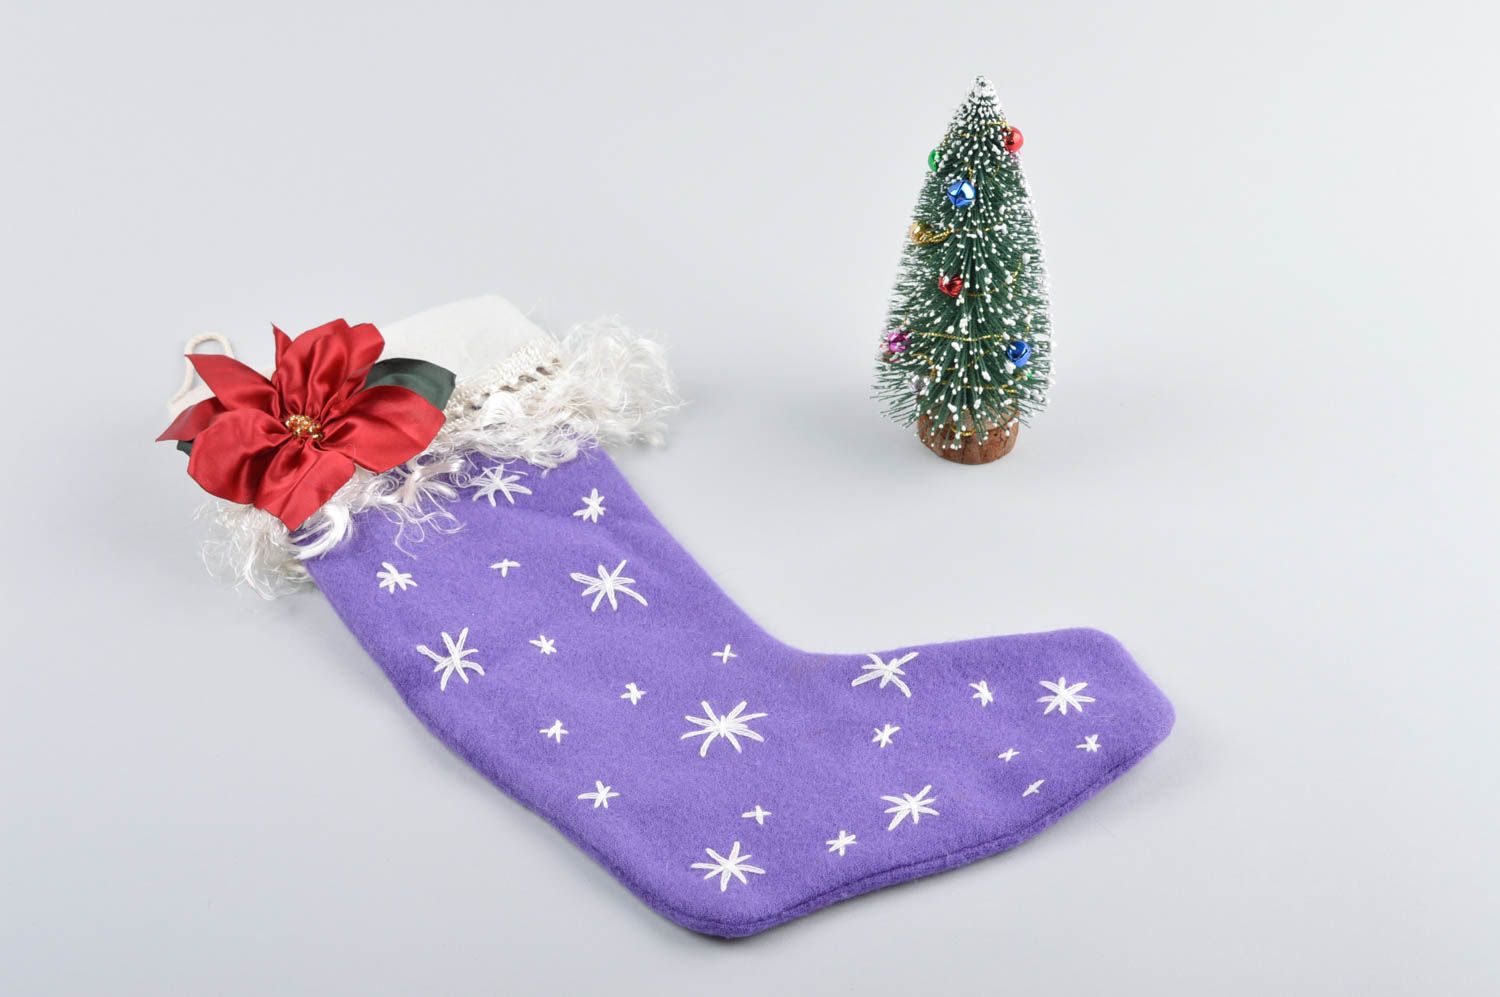 Handmade Christmas stockings Xmas stockings handmade decorations souvenir ideas photo 2